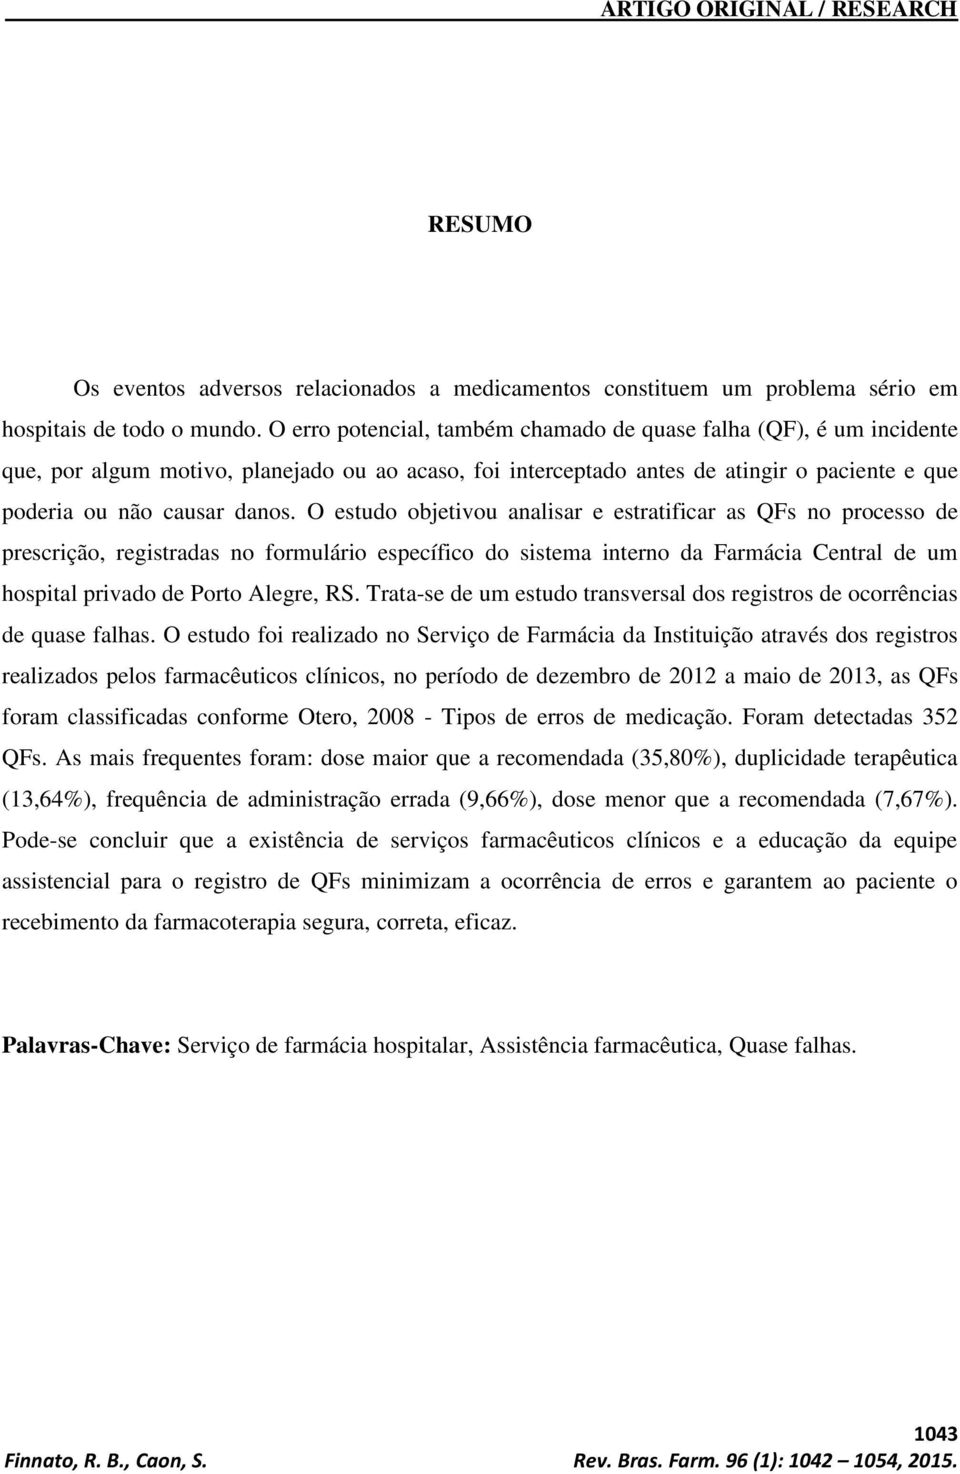 O estudo objetivou analisar e estratificar as QFs no processo de prescrição, registradas no formulário específico do sistema interno da Farmácia Central de um hospital privado de Porto Alegre, RS.